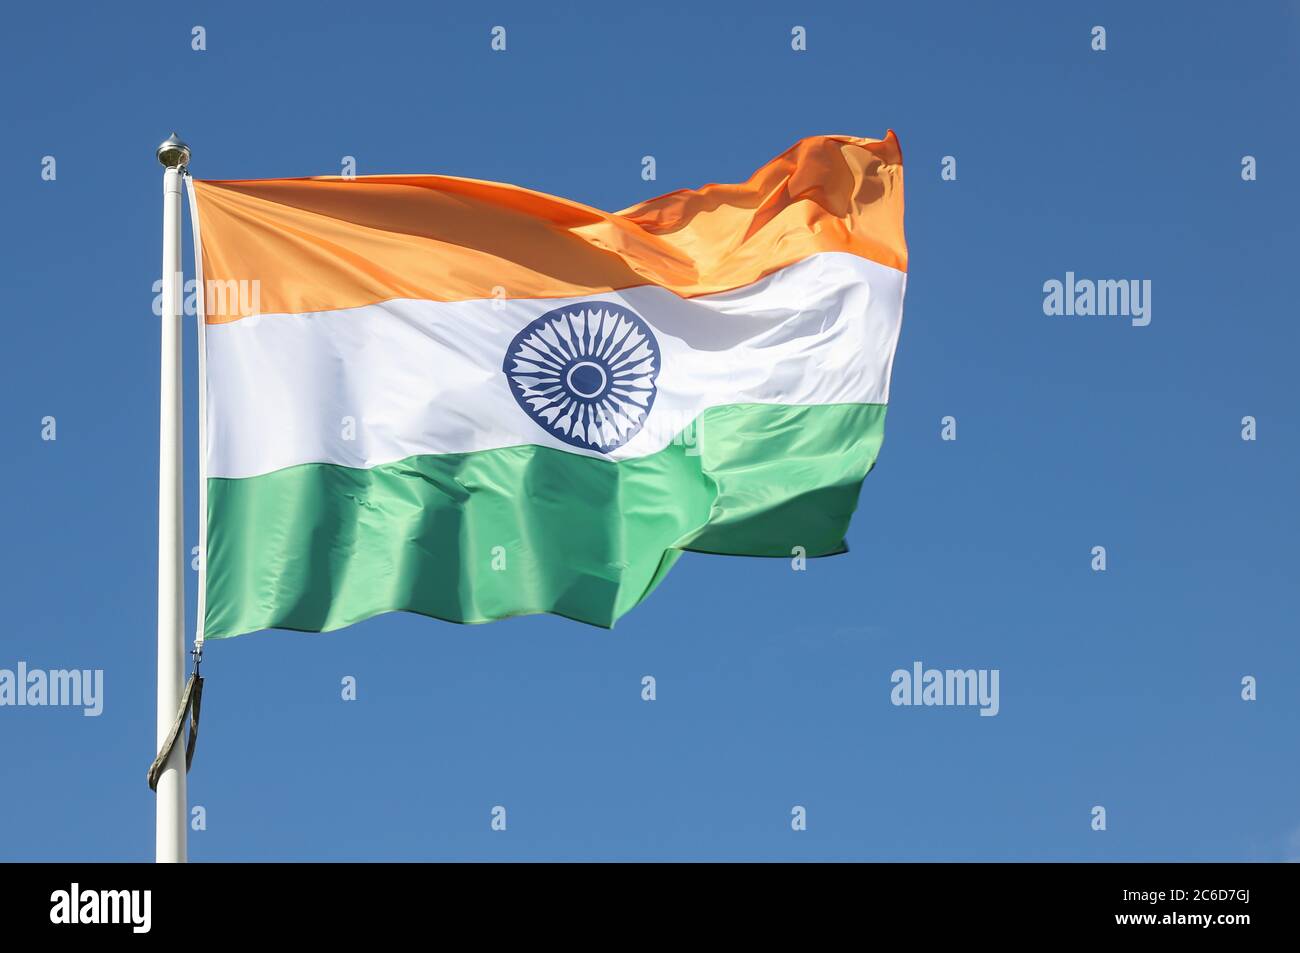 La bandera de la India contra un cielo azul.Närbild på indisk flagga mot blå himmel. Foto de stock